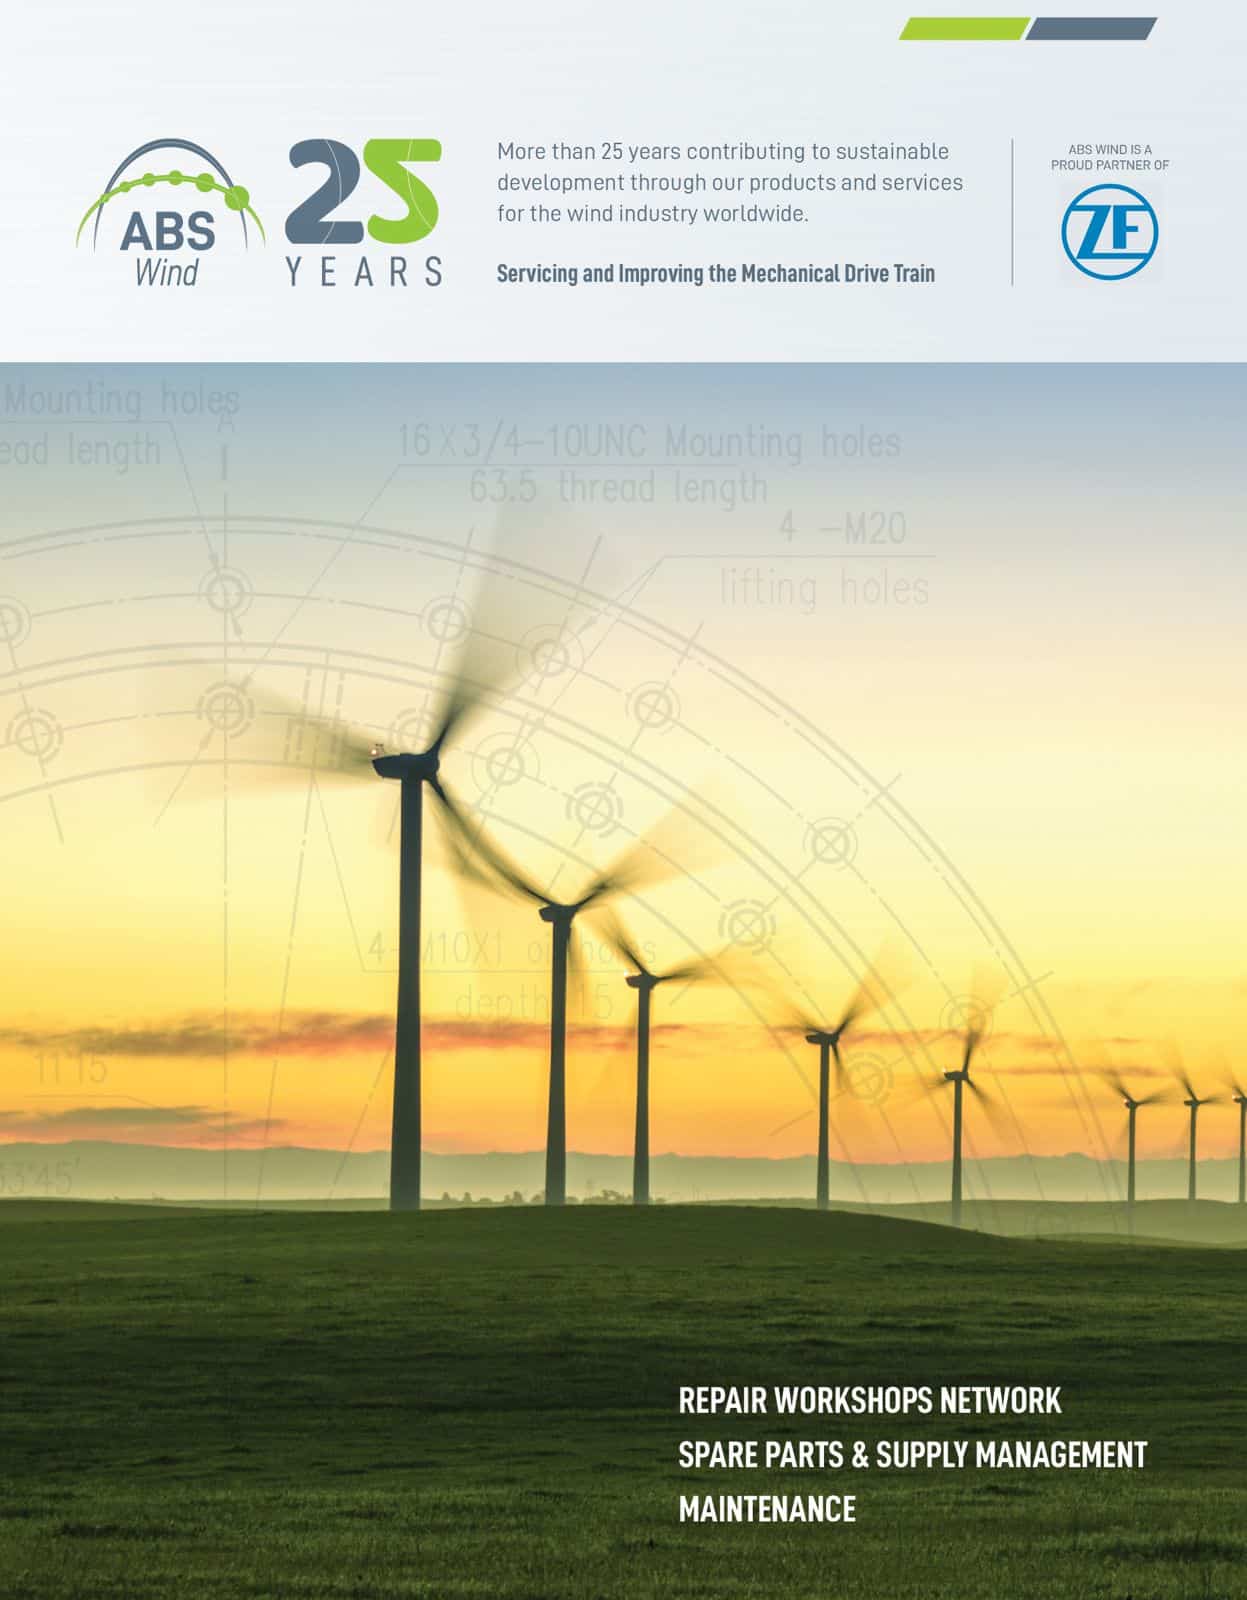 ABS Wind's brochure